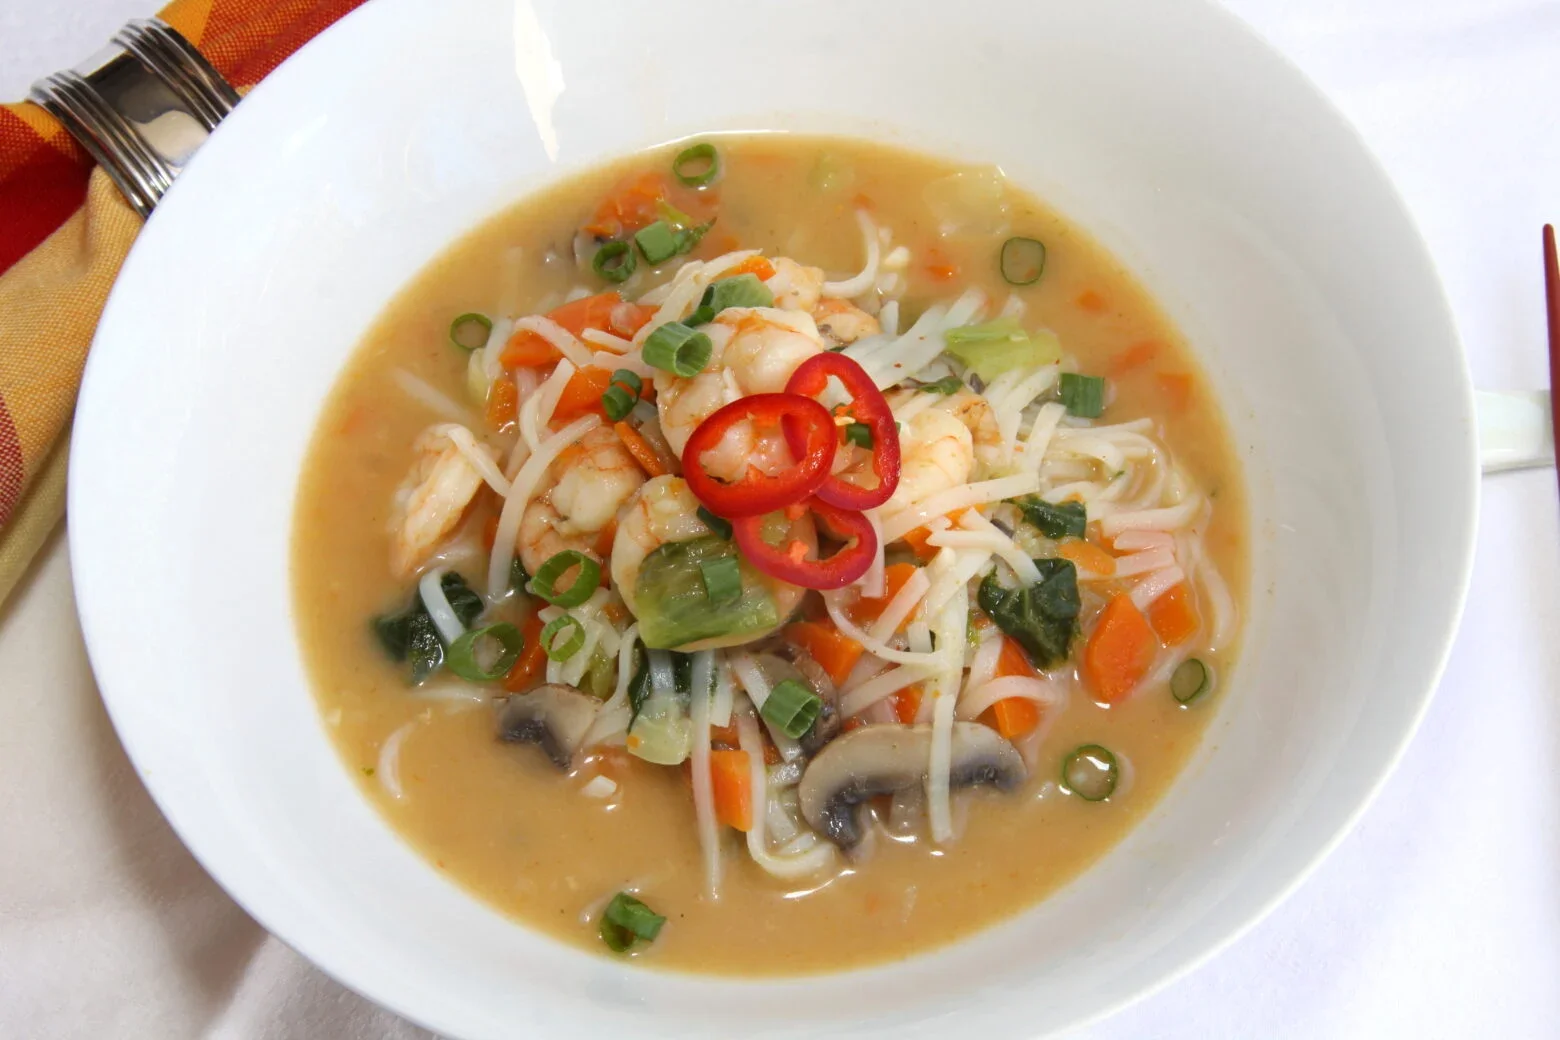 เพจต่างชาติสอนทำซุปผัดไทยใส่กุ้งและผัก